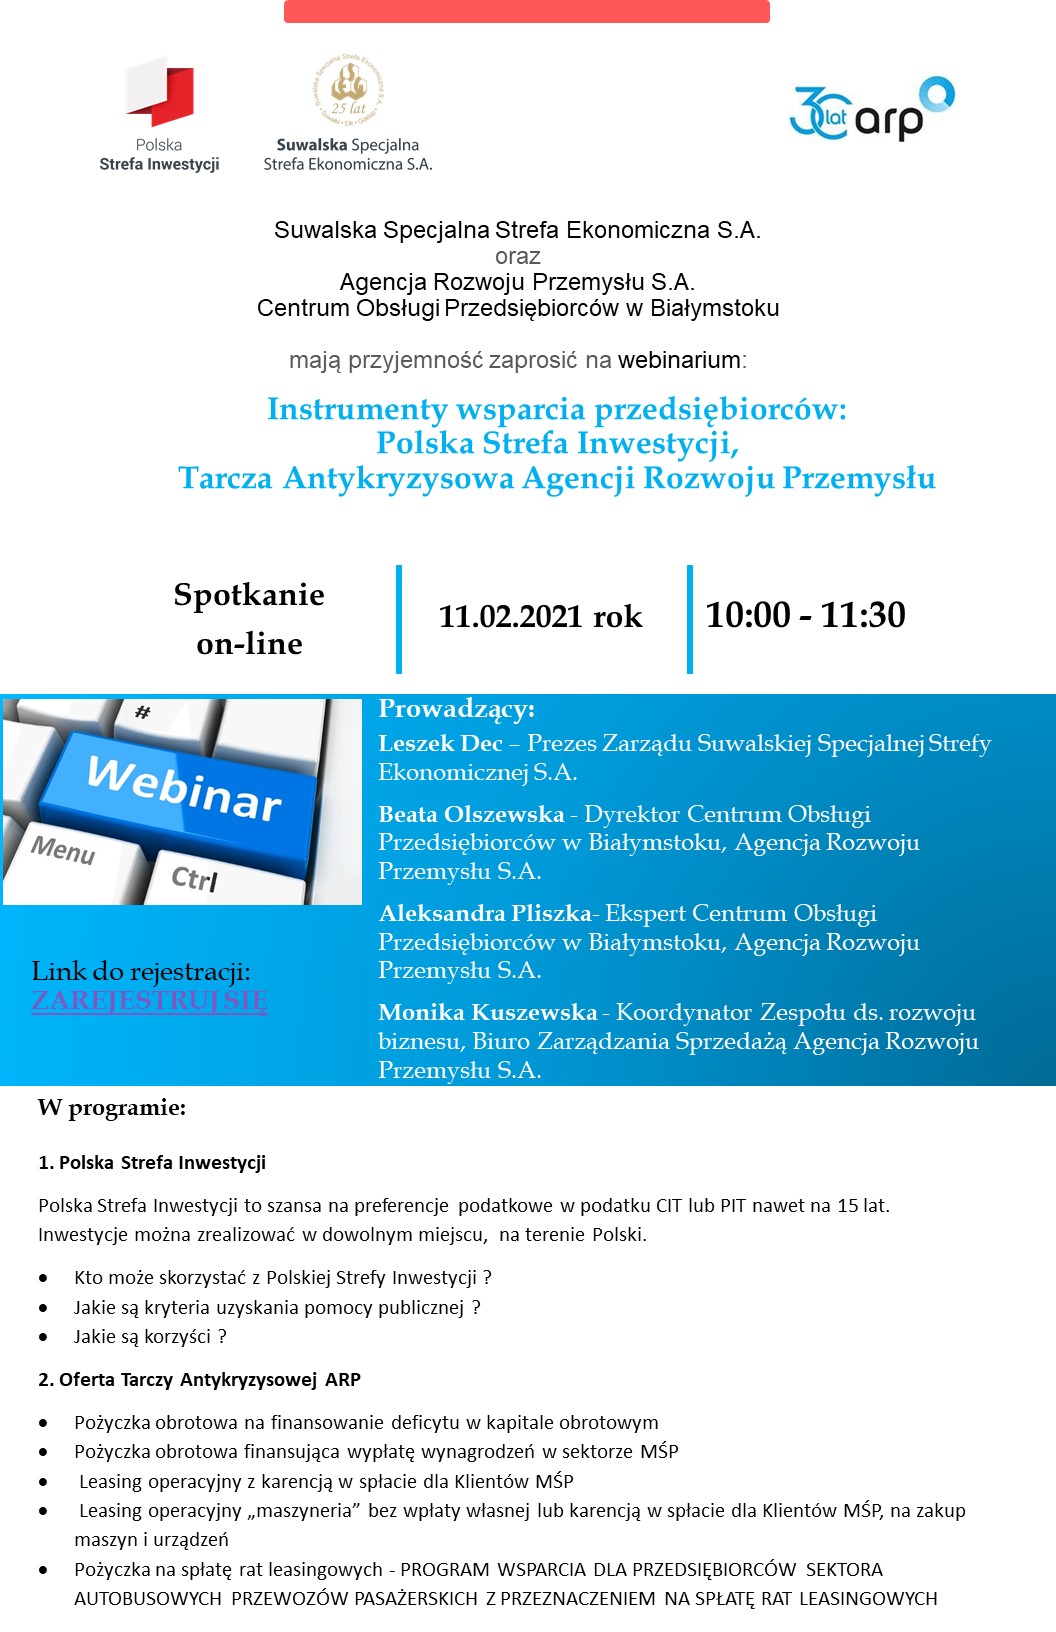 webinarium-instrumenty-wsparcia-przedsiebiorcow-polska-strefa-inwestycji-tarcza-antykryzysowa-agencji-rozwoju-przemyslu-11-02-2021-r-godz-10-00